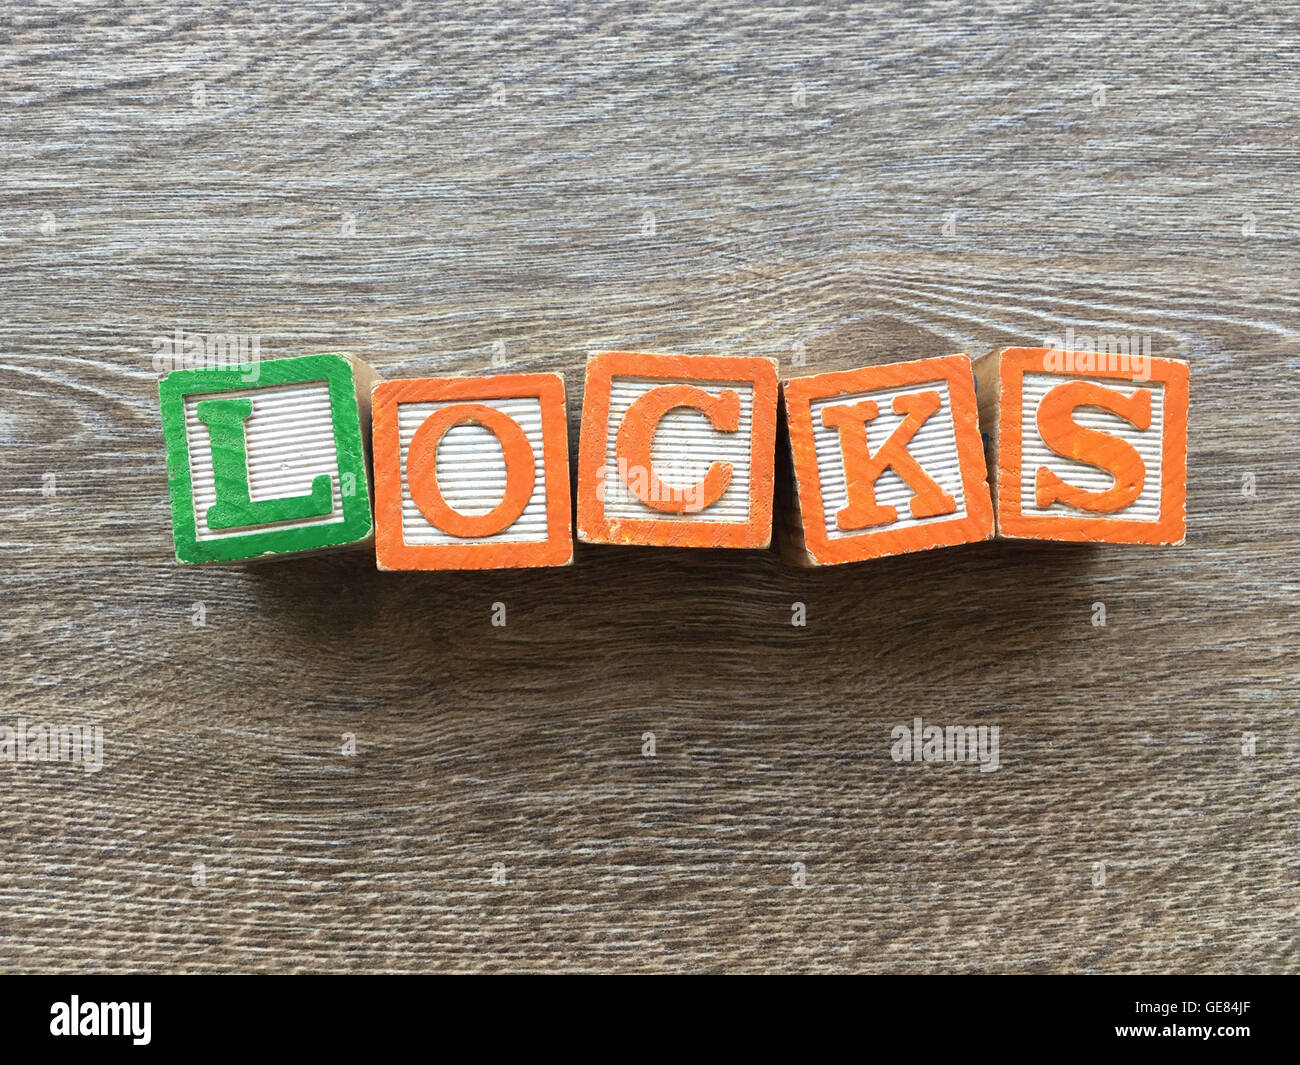 Holzblöcke oder hölzerne Würfel Spielzeug mit Alphabet Buchstaben darauf kombiniert miteinander, um das Wort zu erstellen sperrt Stockfoto